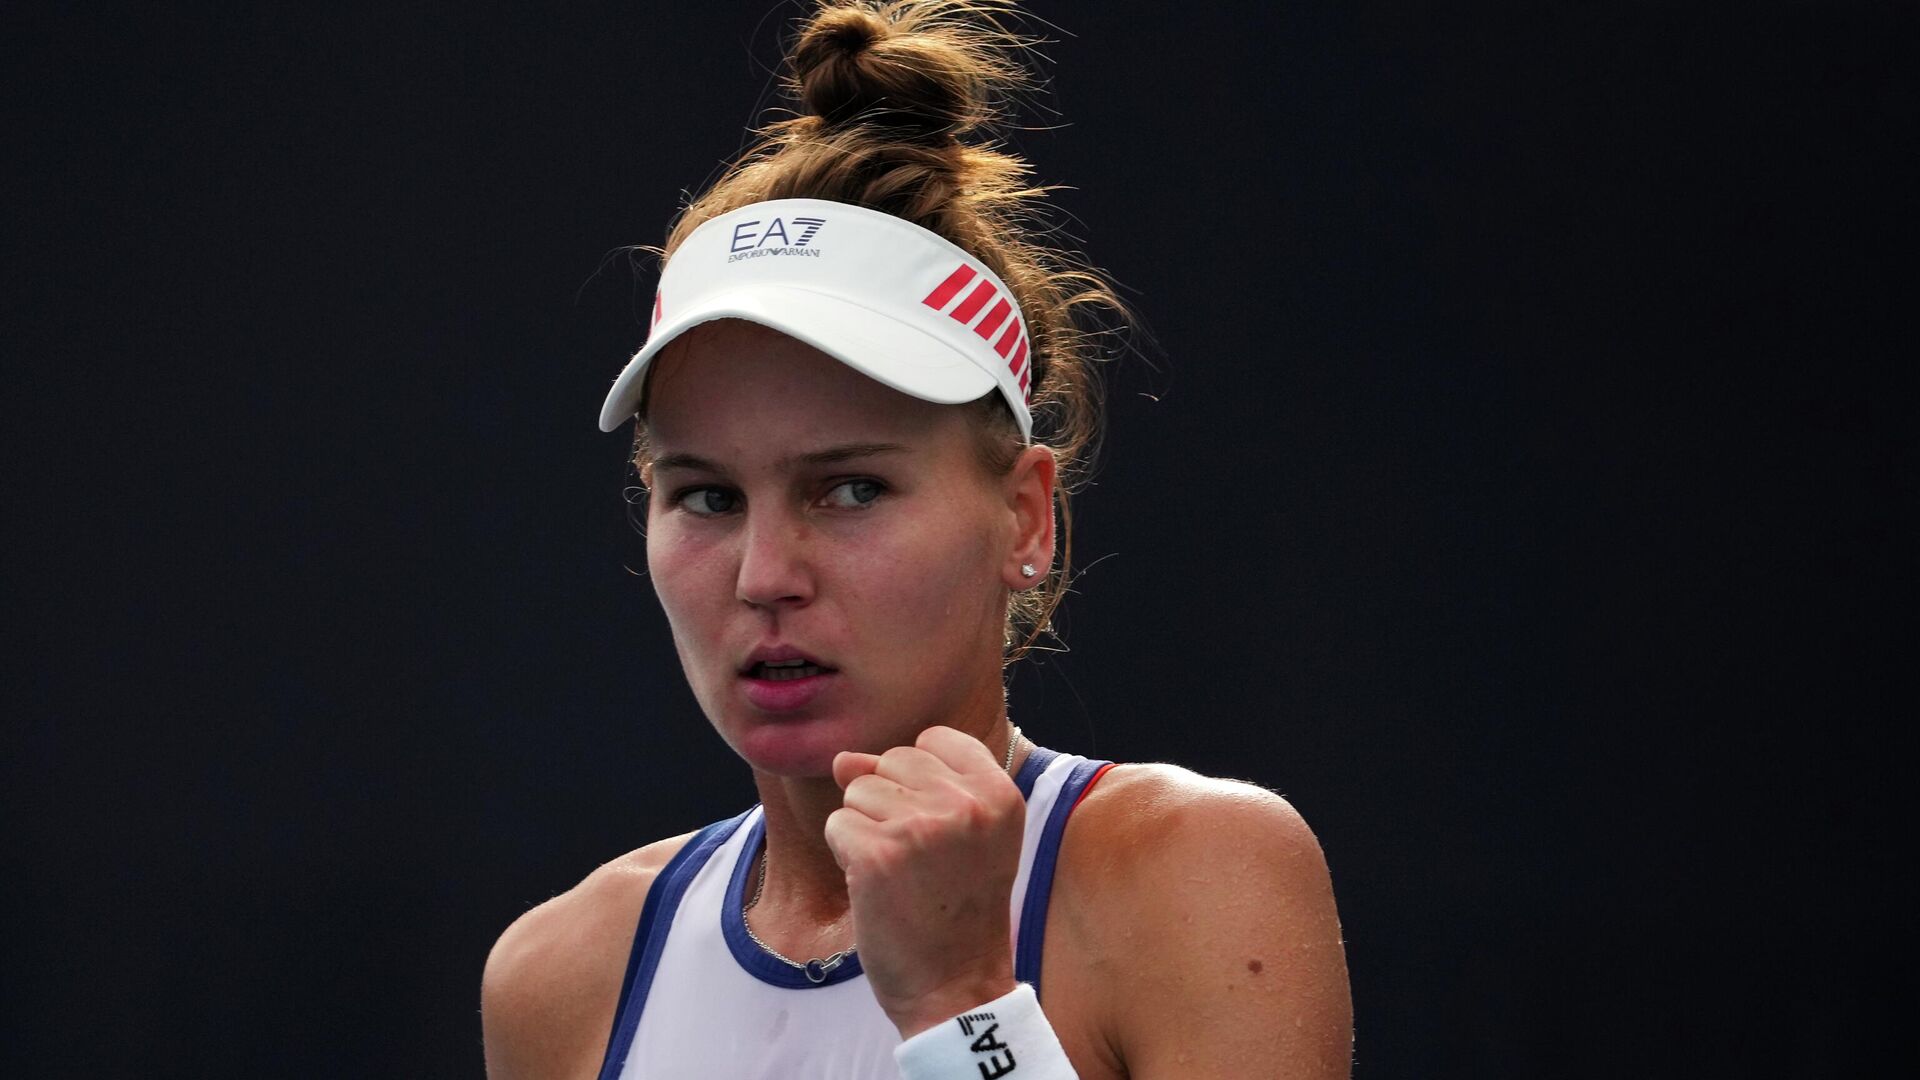 Кудерметова обыграла третью ракетку мира Пегулу и вышла в полуфинал турнира WTA в Мадриде